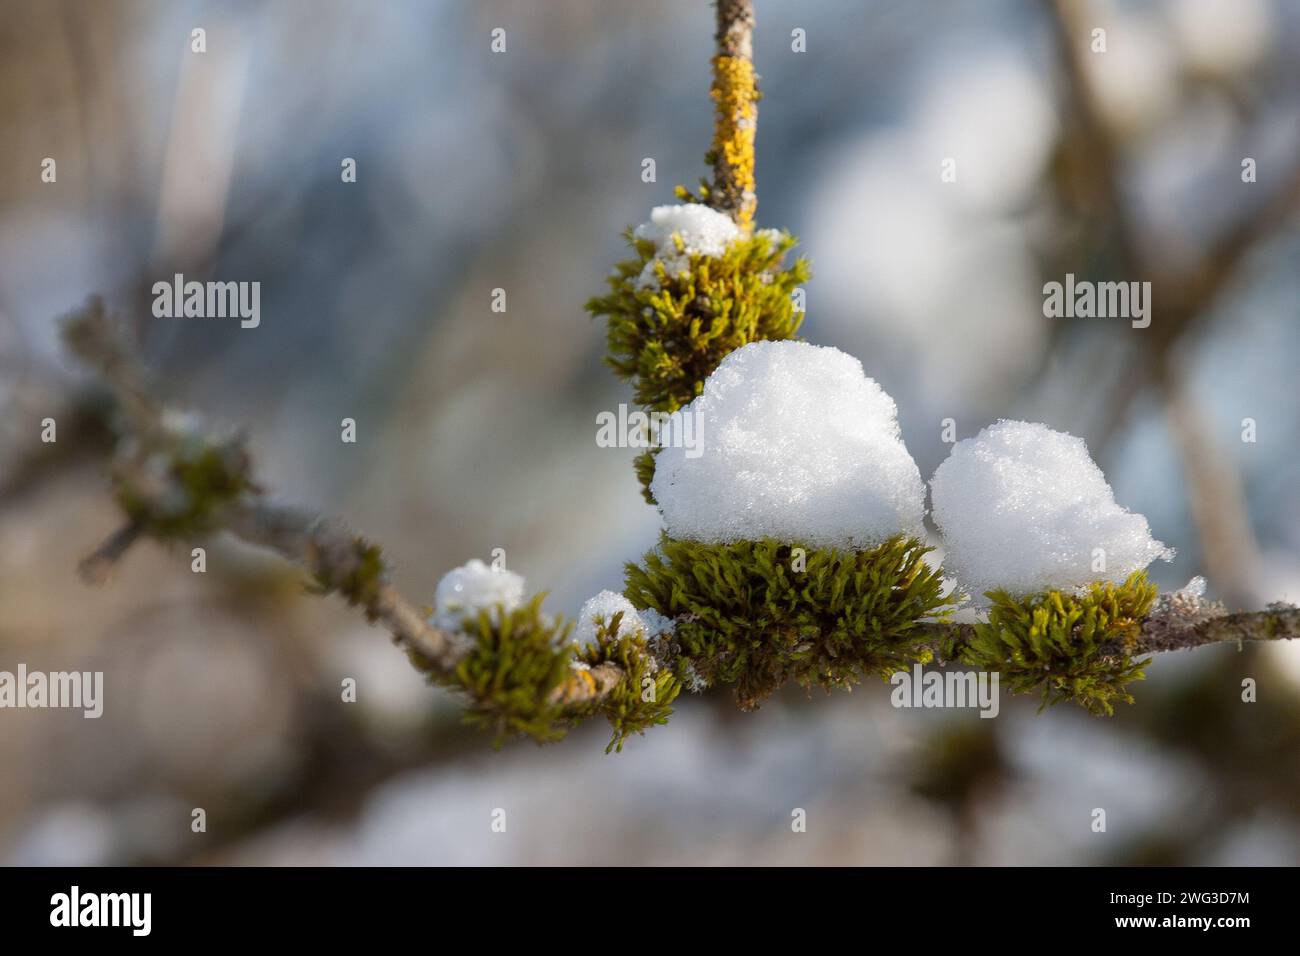 Ein zarter Zweig, umhüllt von Moos, trägt eine Wintermütze aus Schnee. Aber der Frühling wird bald die frostige Decke ablösen, um neues Leben zu enthüllen. Stockfoto